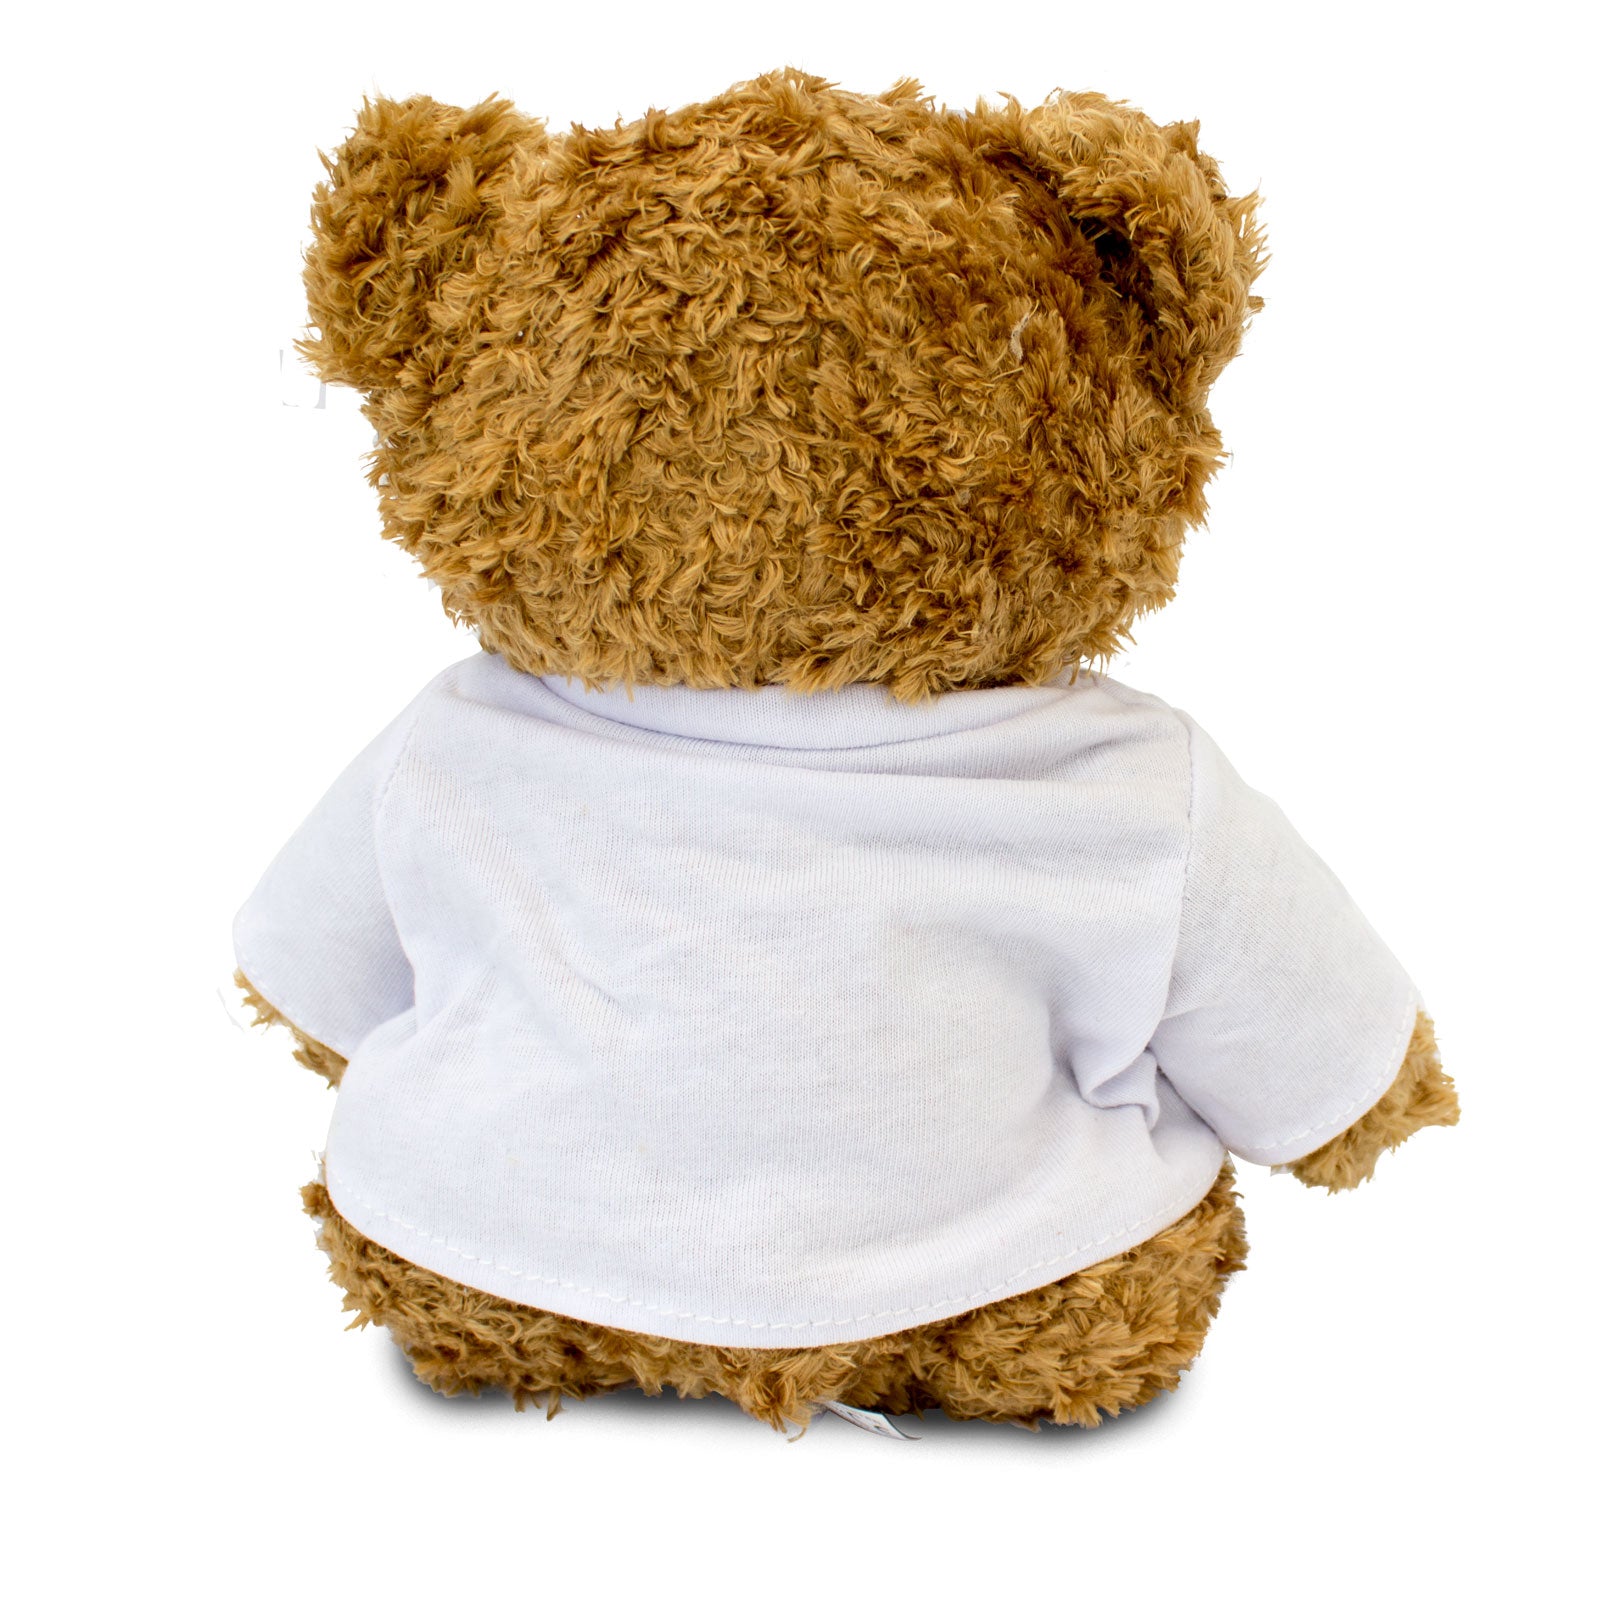 Get Well Soon Curtis - Teddy Bear